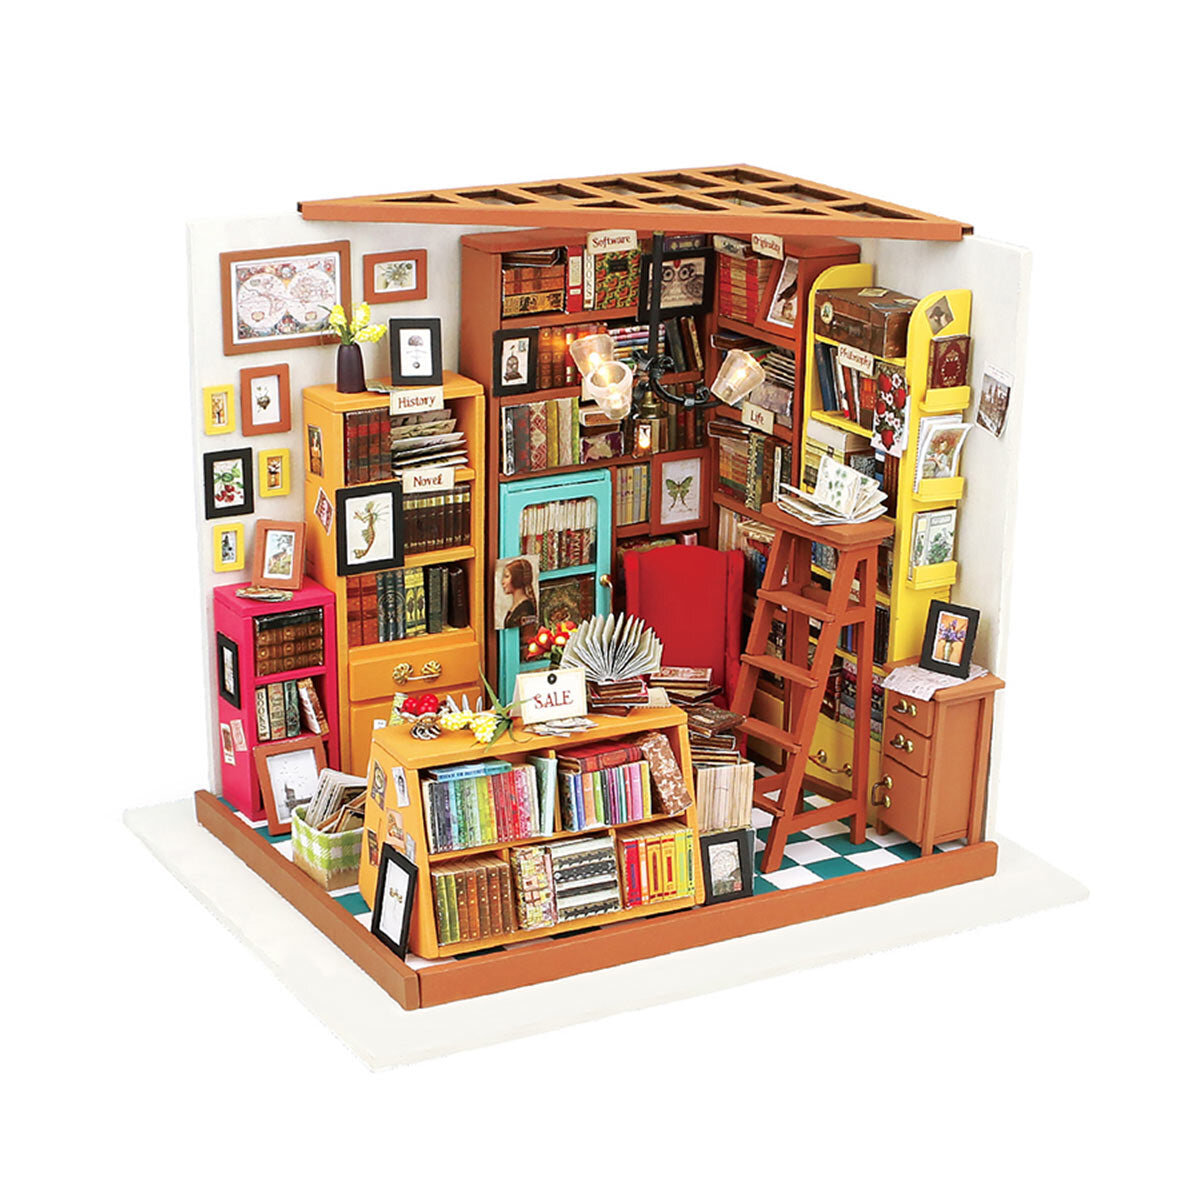 Miniaturhaus - Sams Studienbibliothek Rolife DG102